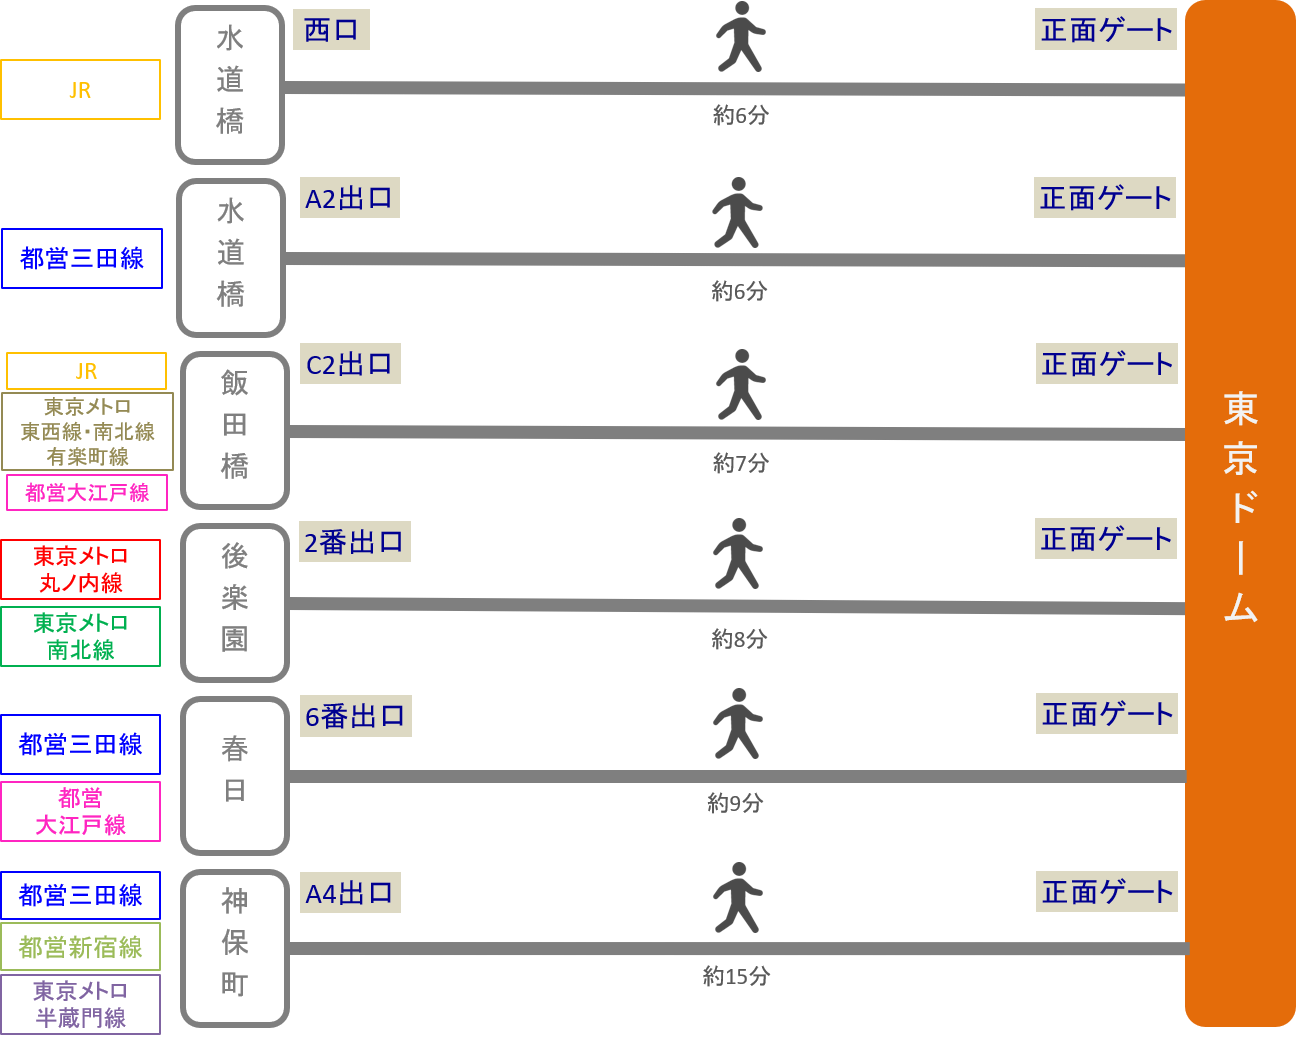 東京ドーム アクセス 電車 車での行き方 料金 時間をエリア別に徹底比較した アキチャン Akippa Channel